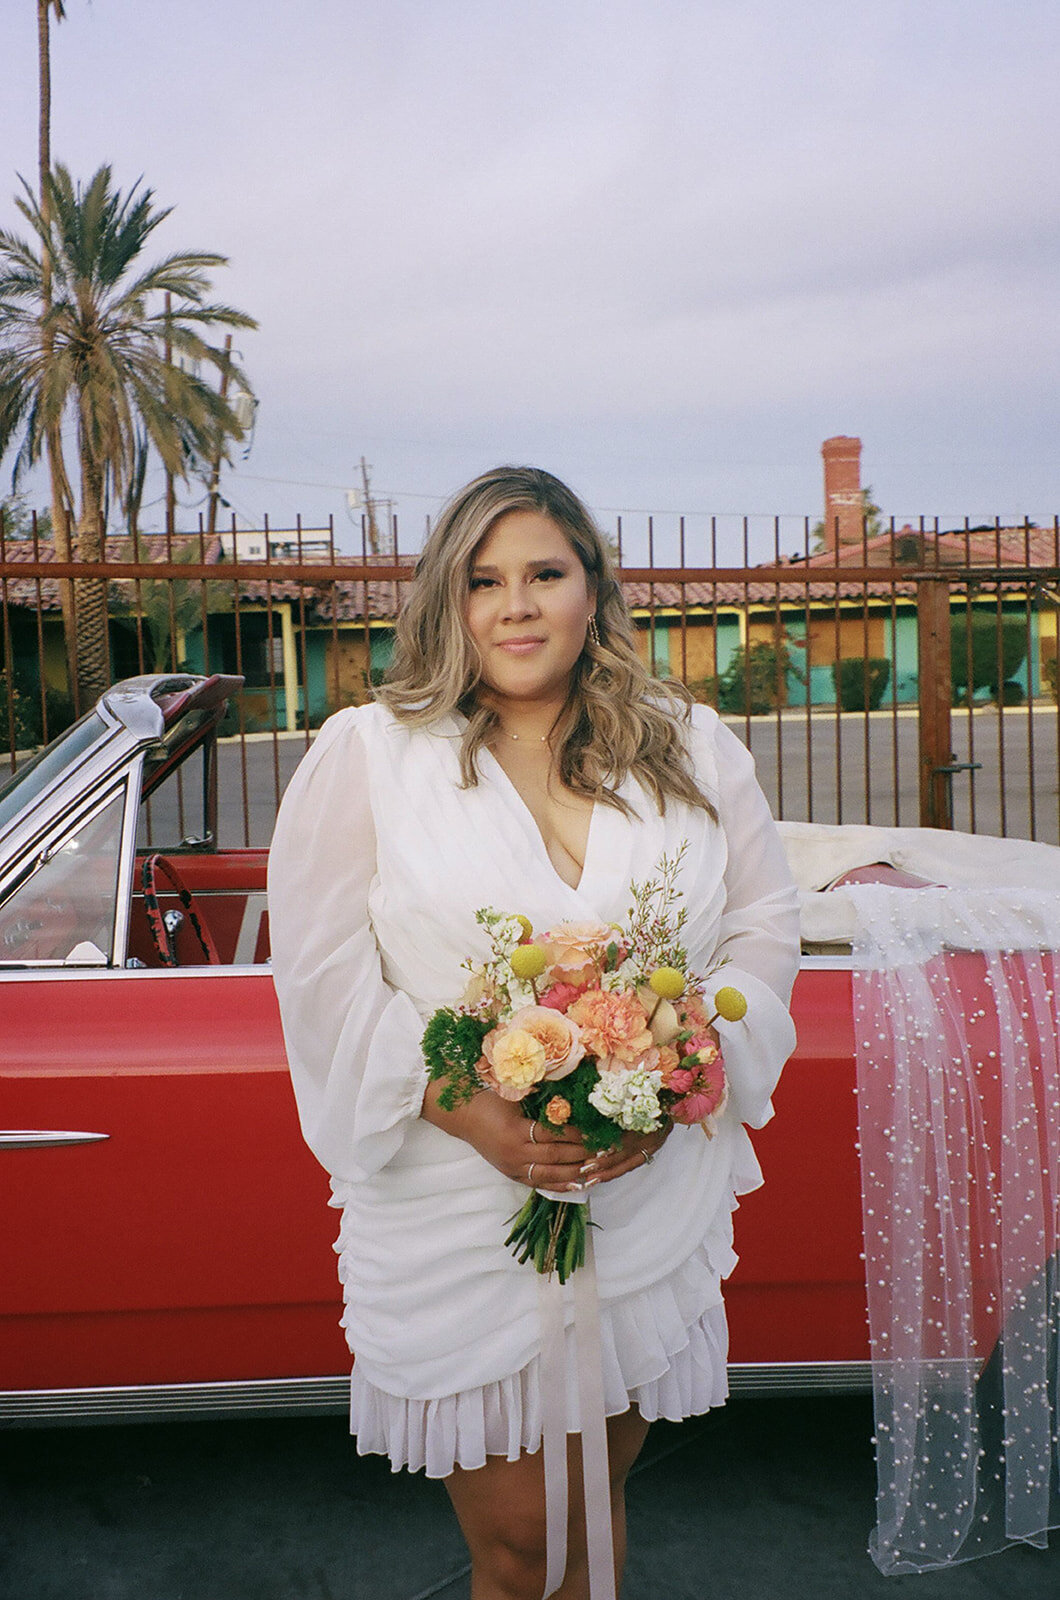 Bride detail shot with classic car Las Vegas